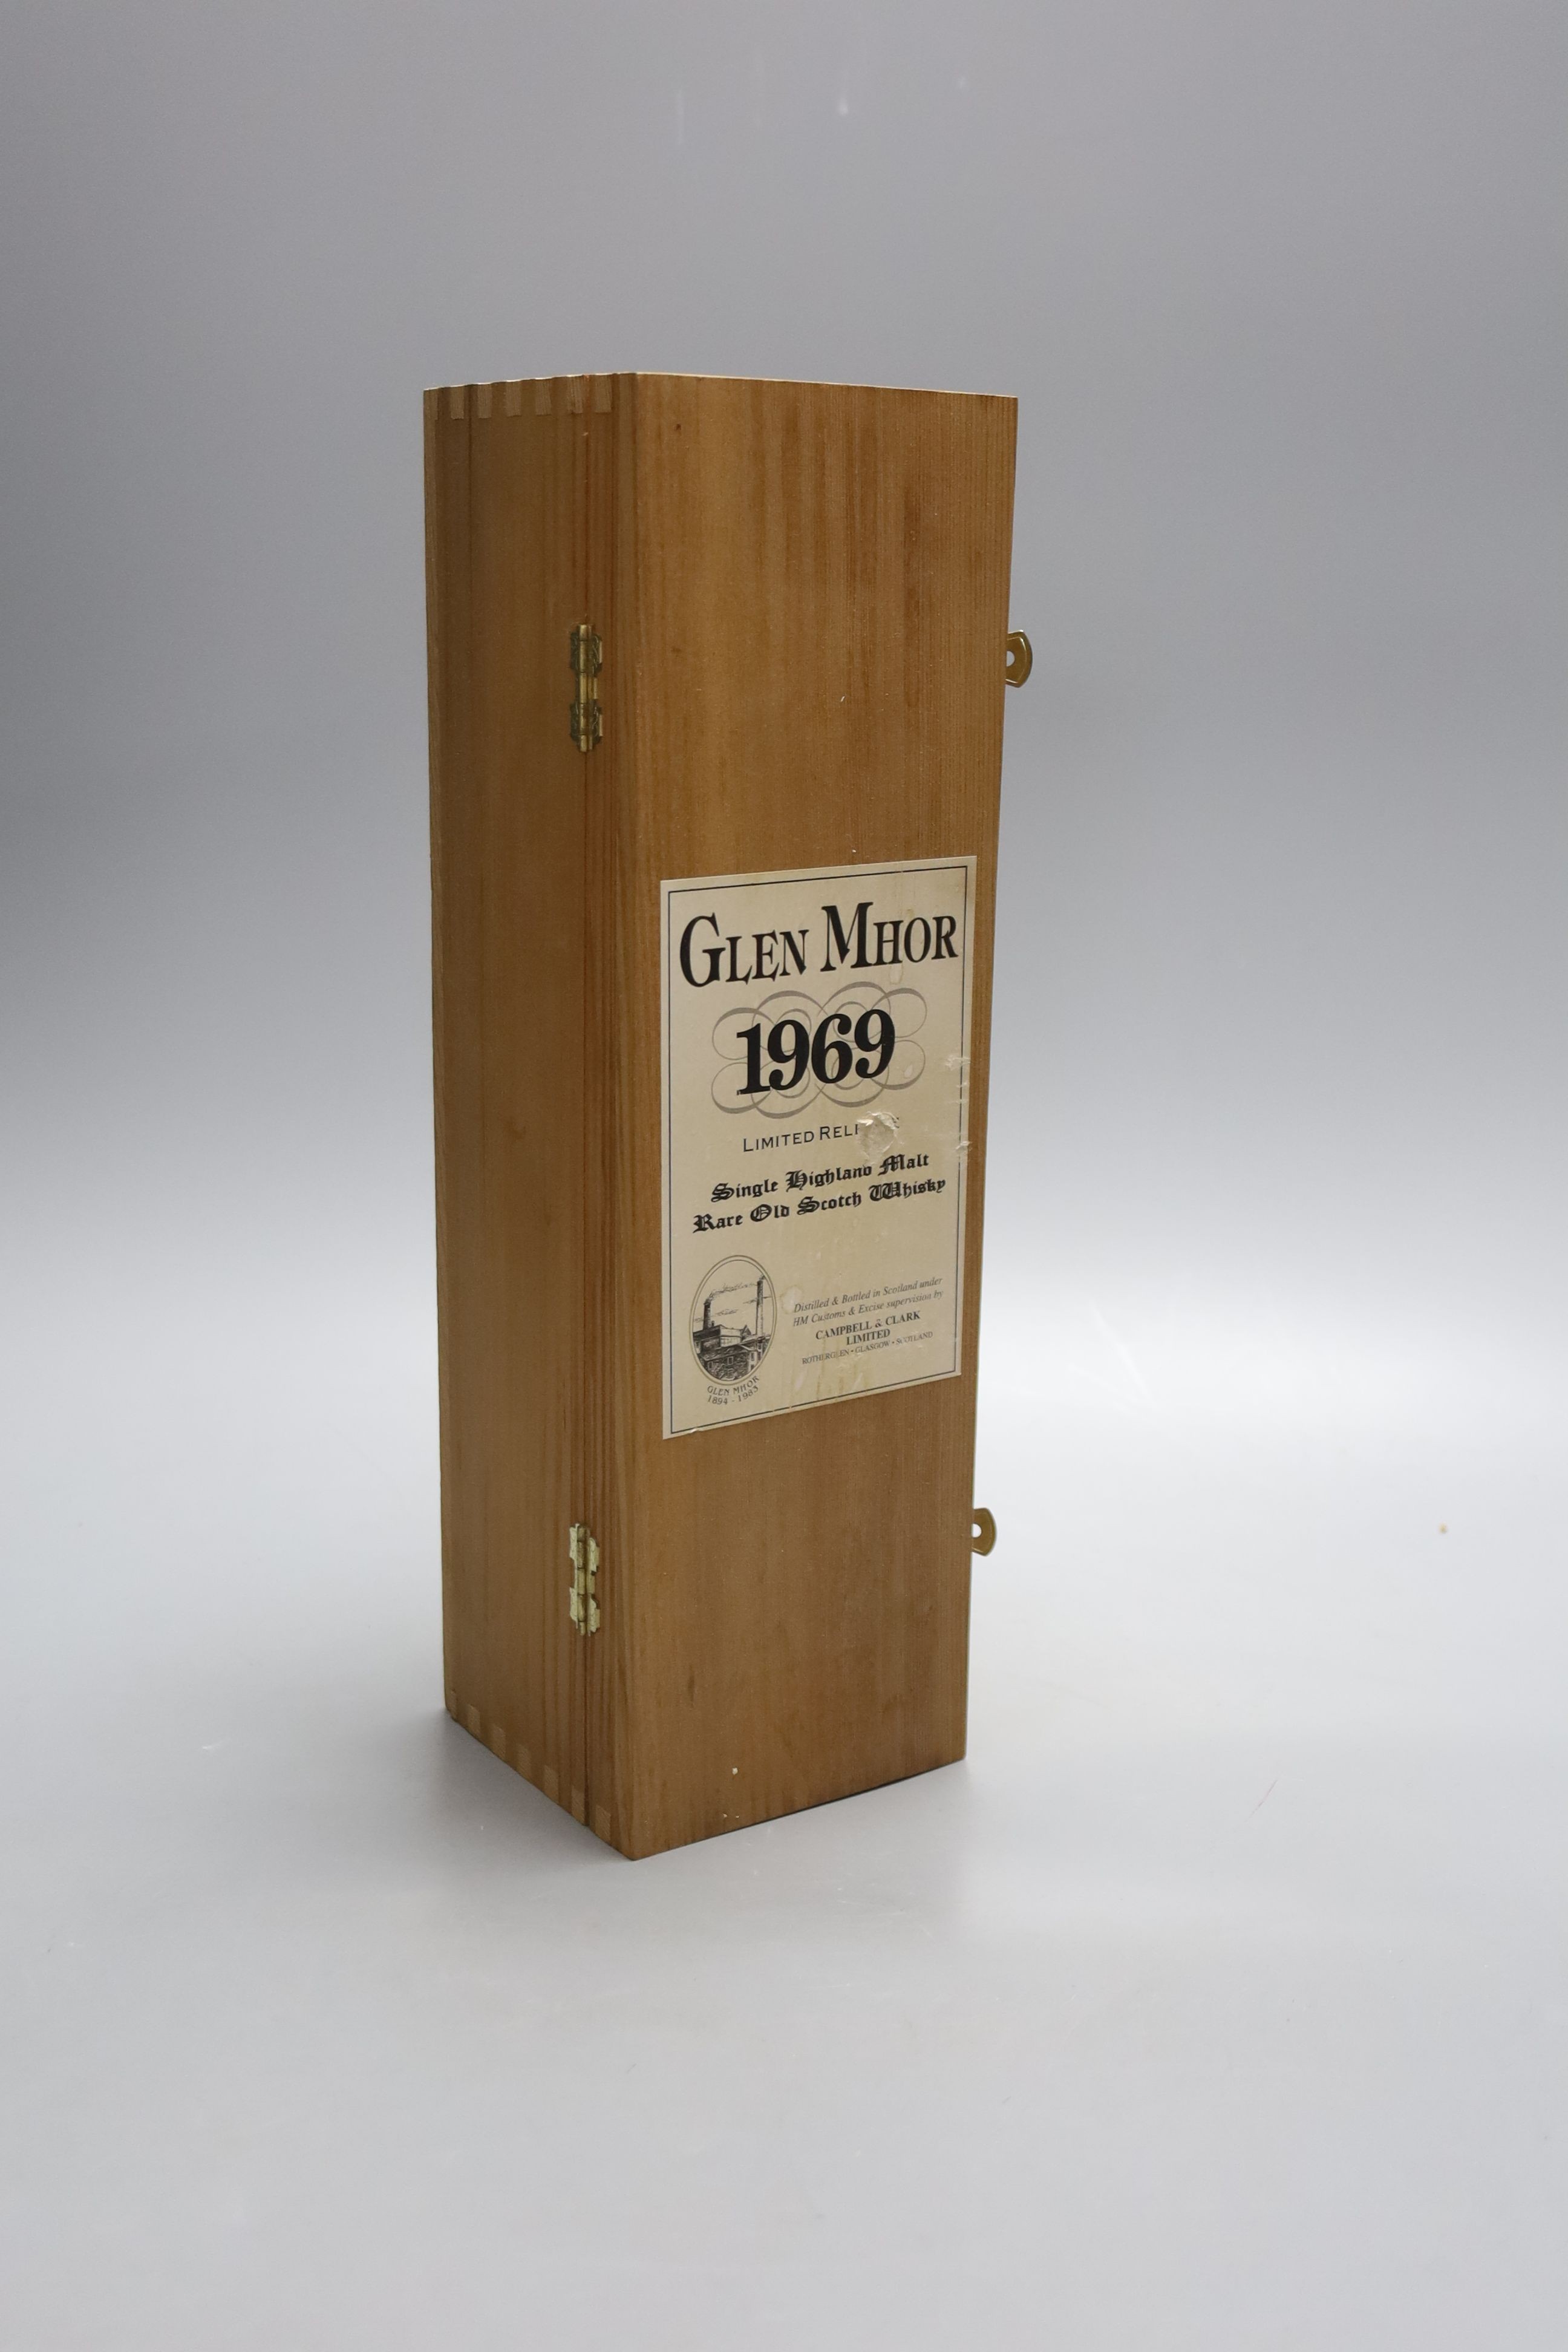 A bottle of Glen Mhor 1969 single Highland malt whisky, no. 518 off 2265, in wooden presentation - Image 2 of 2